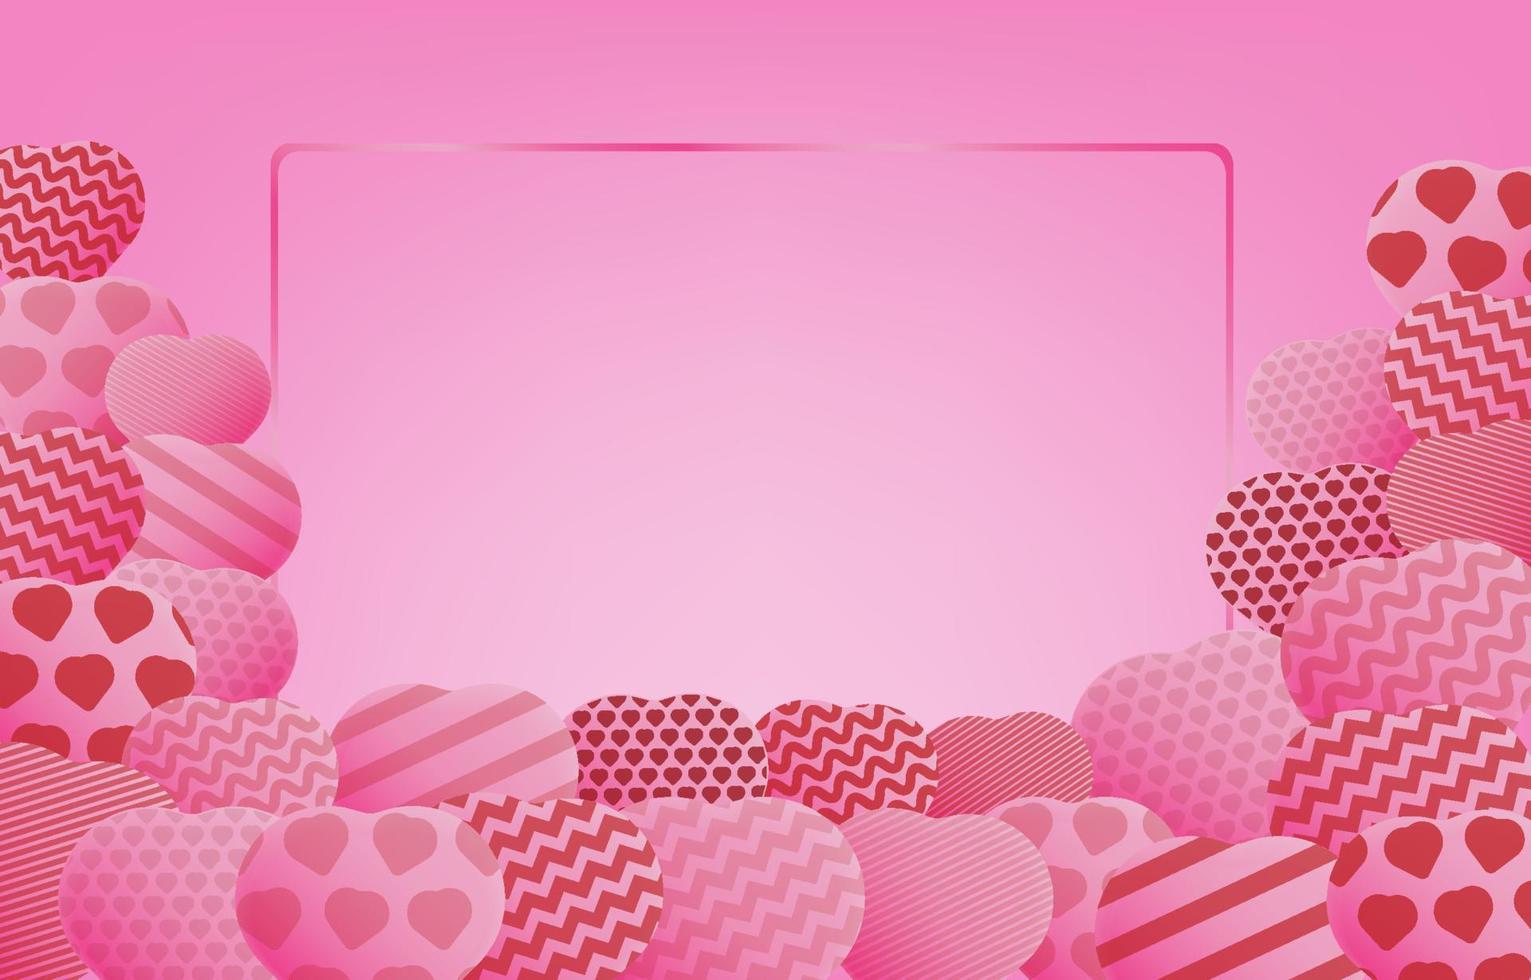 valentinstagplakat oder banner mit verschiedenen herzen und leerem quadratischem rahmen auf rosa hintergrund. design für werbung und einkaufsvorlage. hintergrund für liebes- und valentinstagkonzept. vektor